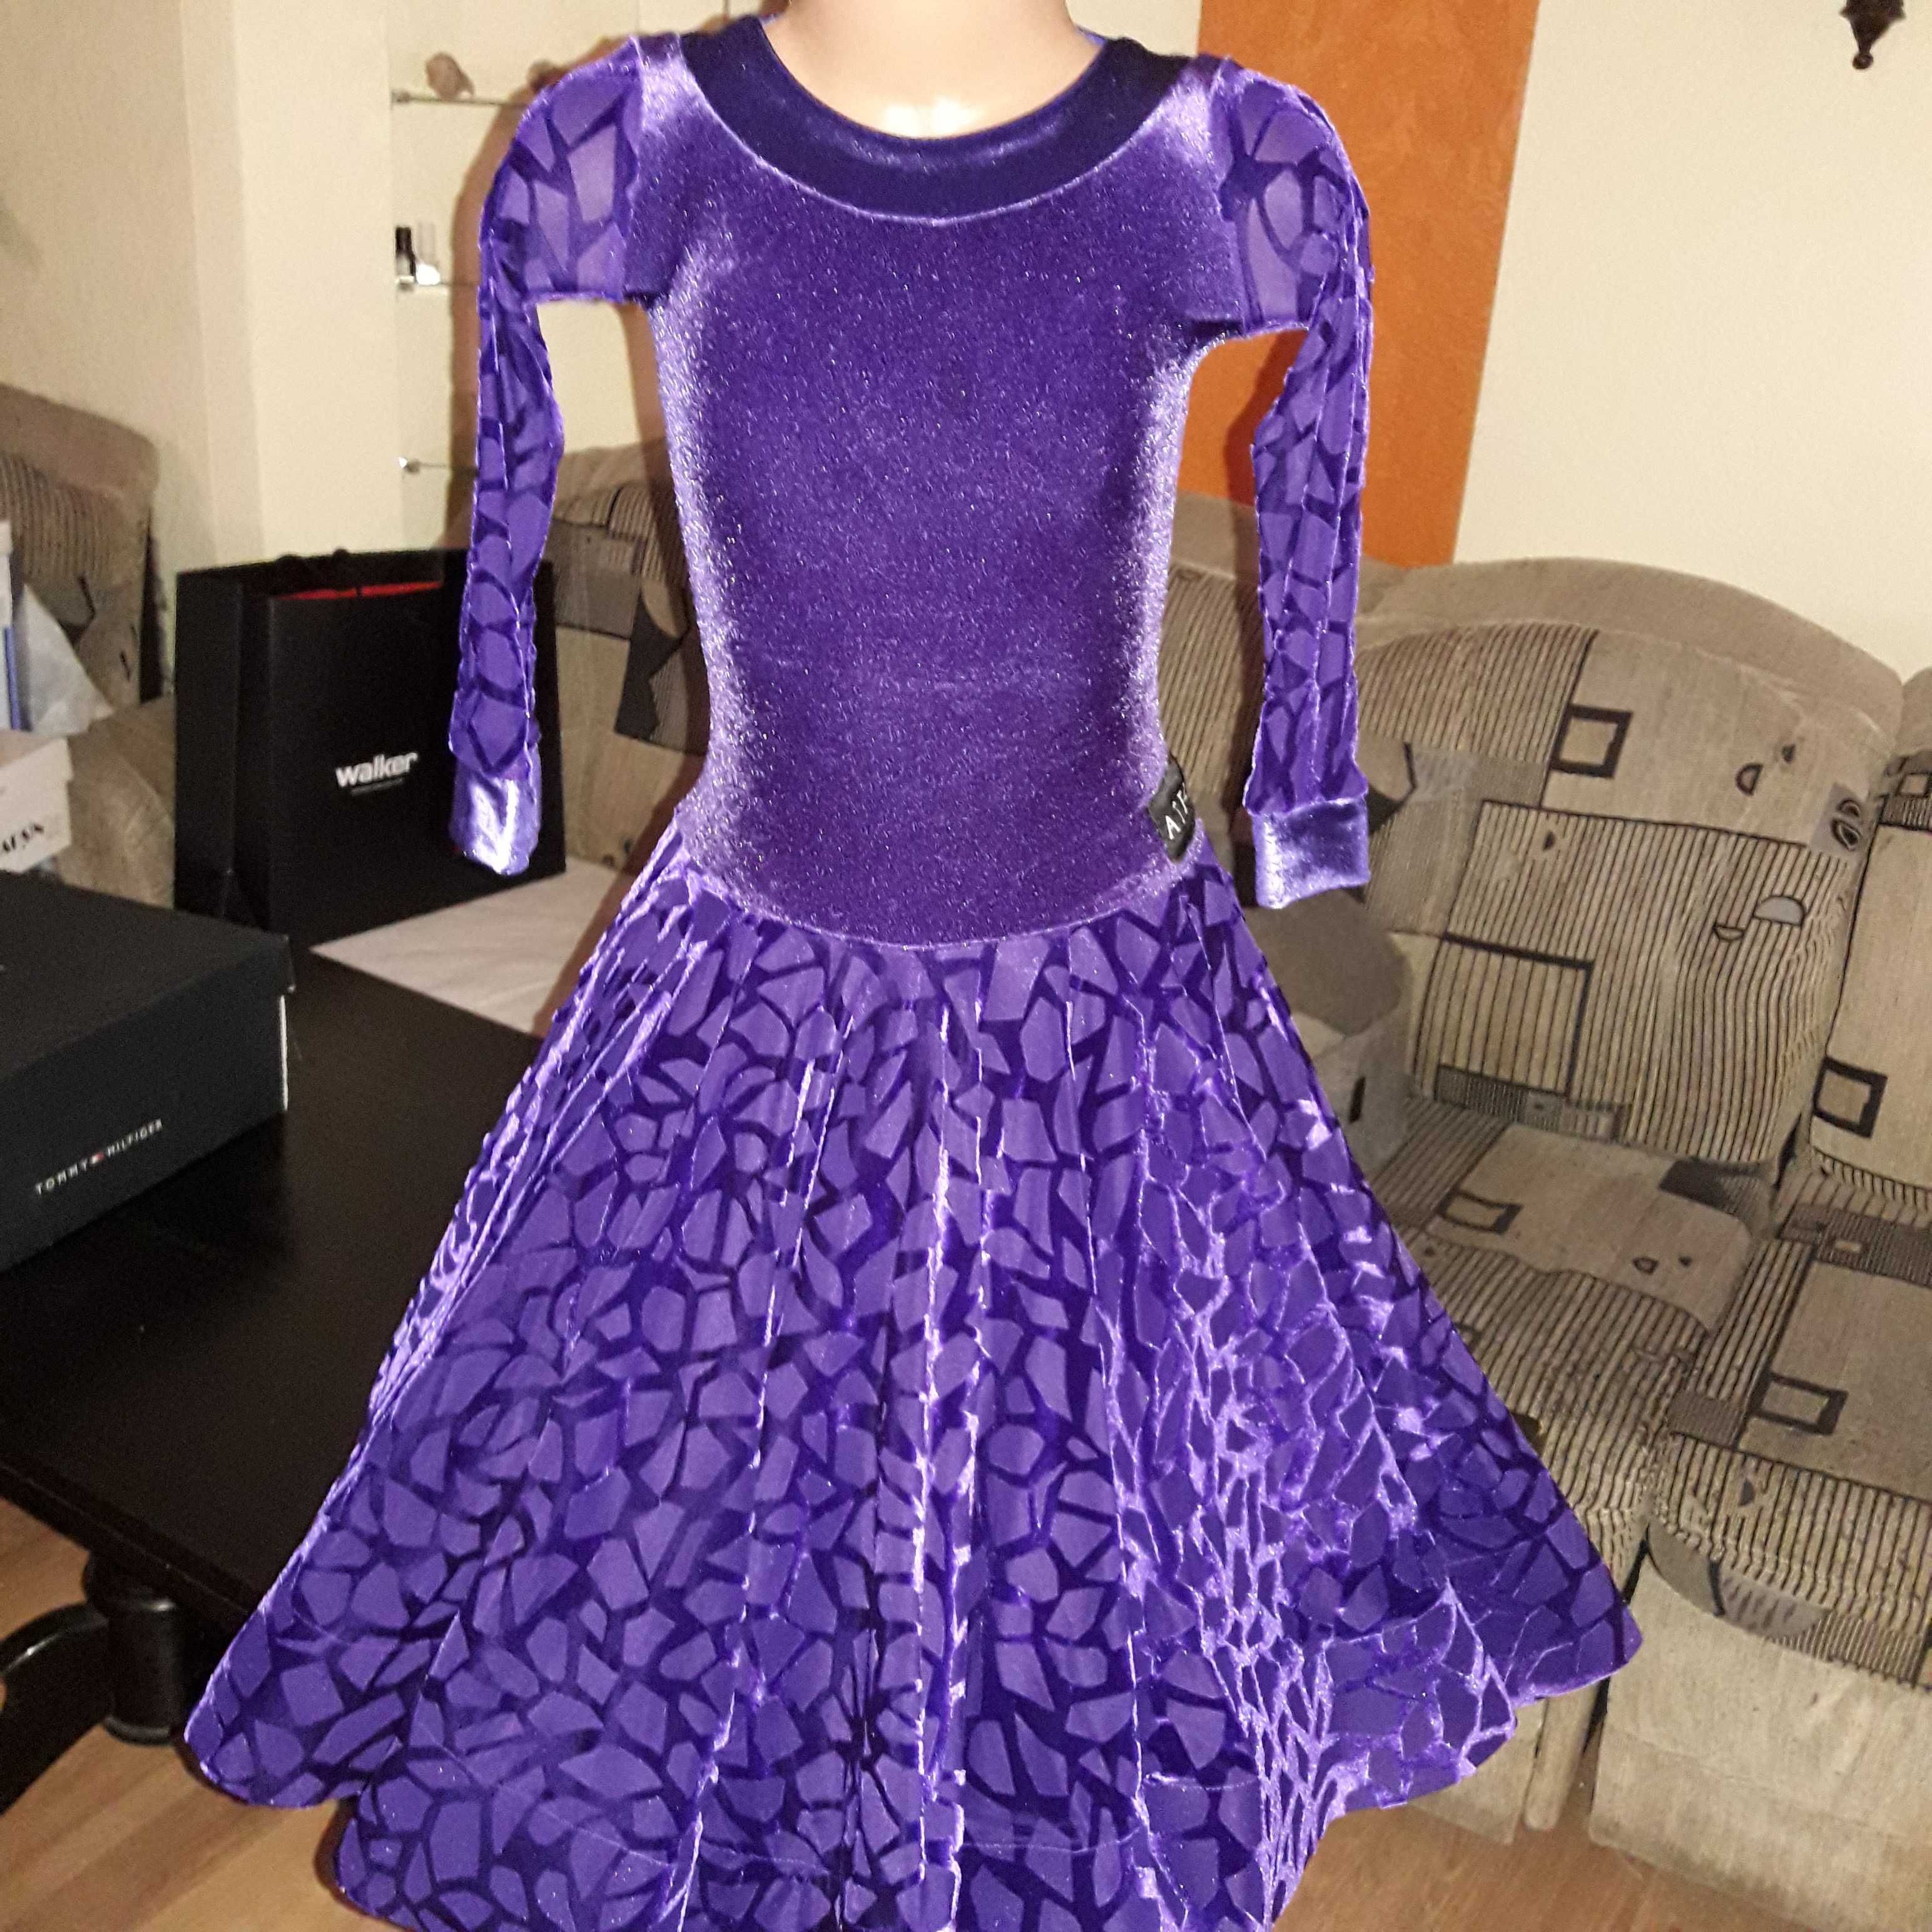 Танцевальное платье для девочки фирменное размер 140. 9 лет